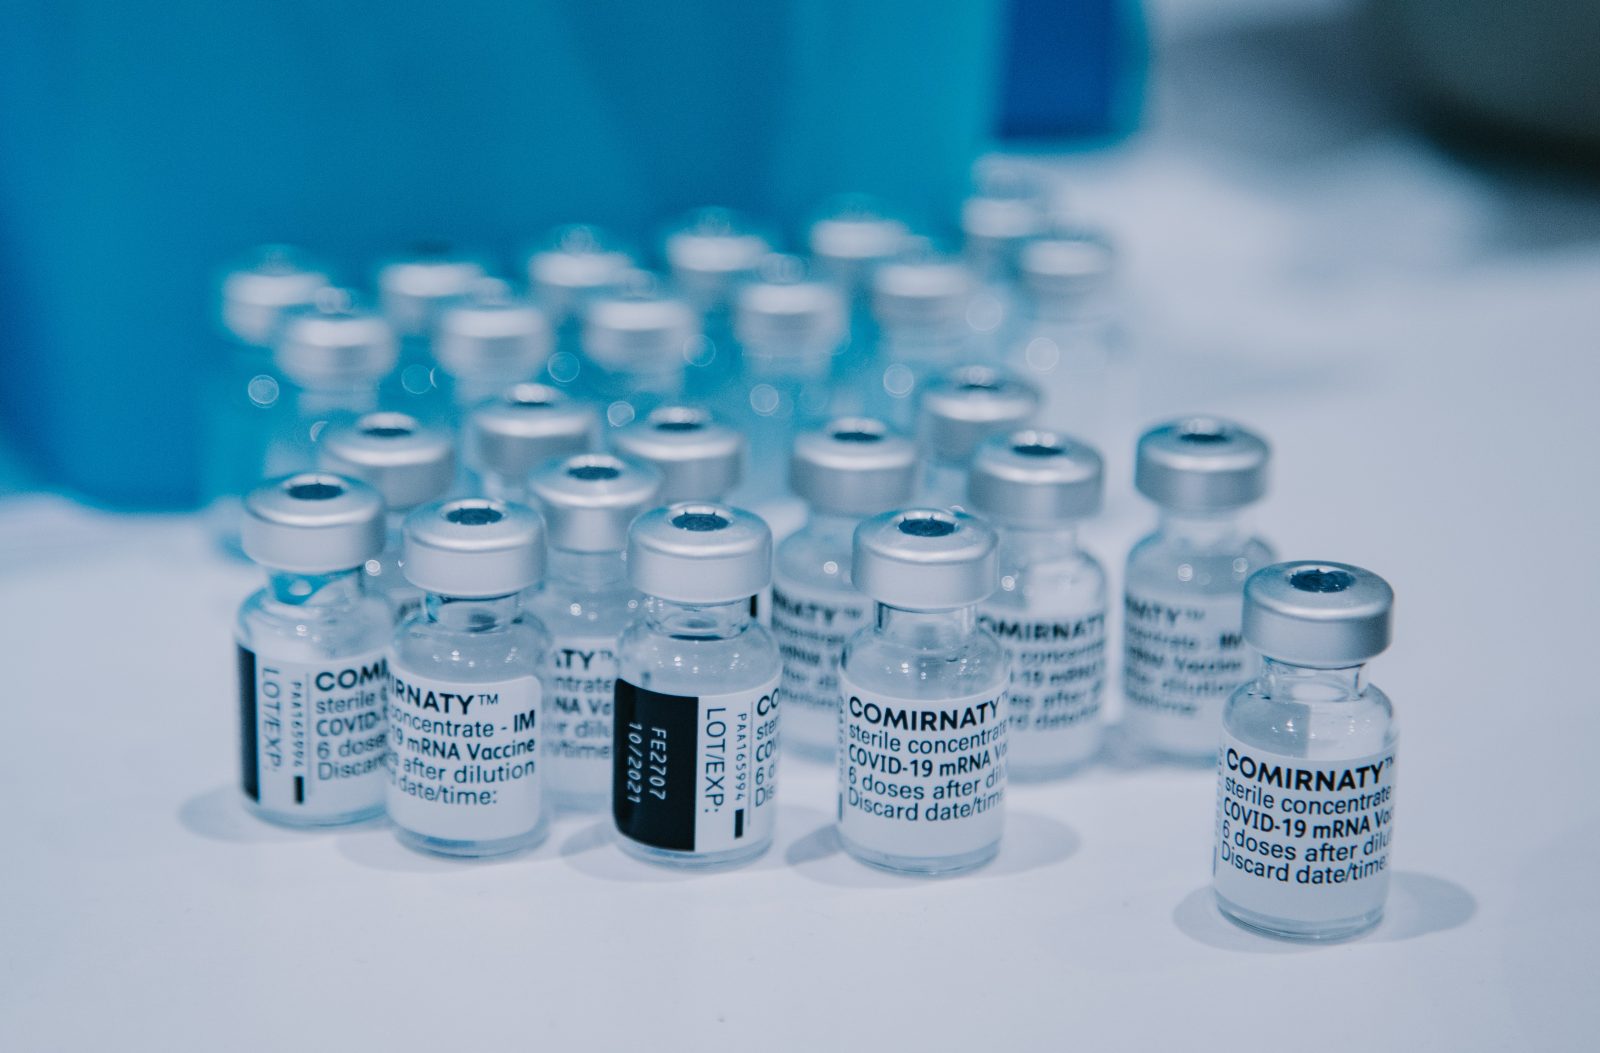 Modifikovaná vakcína Pfizer/BioNTech proti mutaci Covidu s názvem Omicron by mohla být k dispozici již brzy.